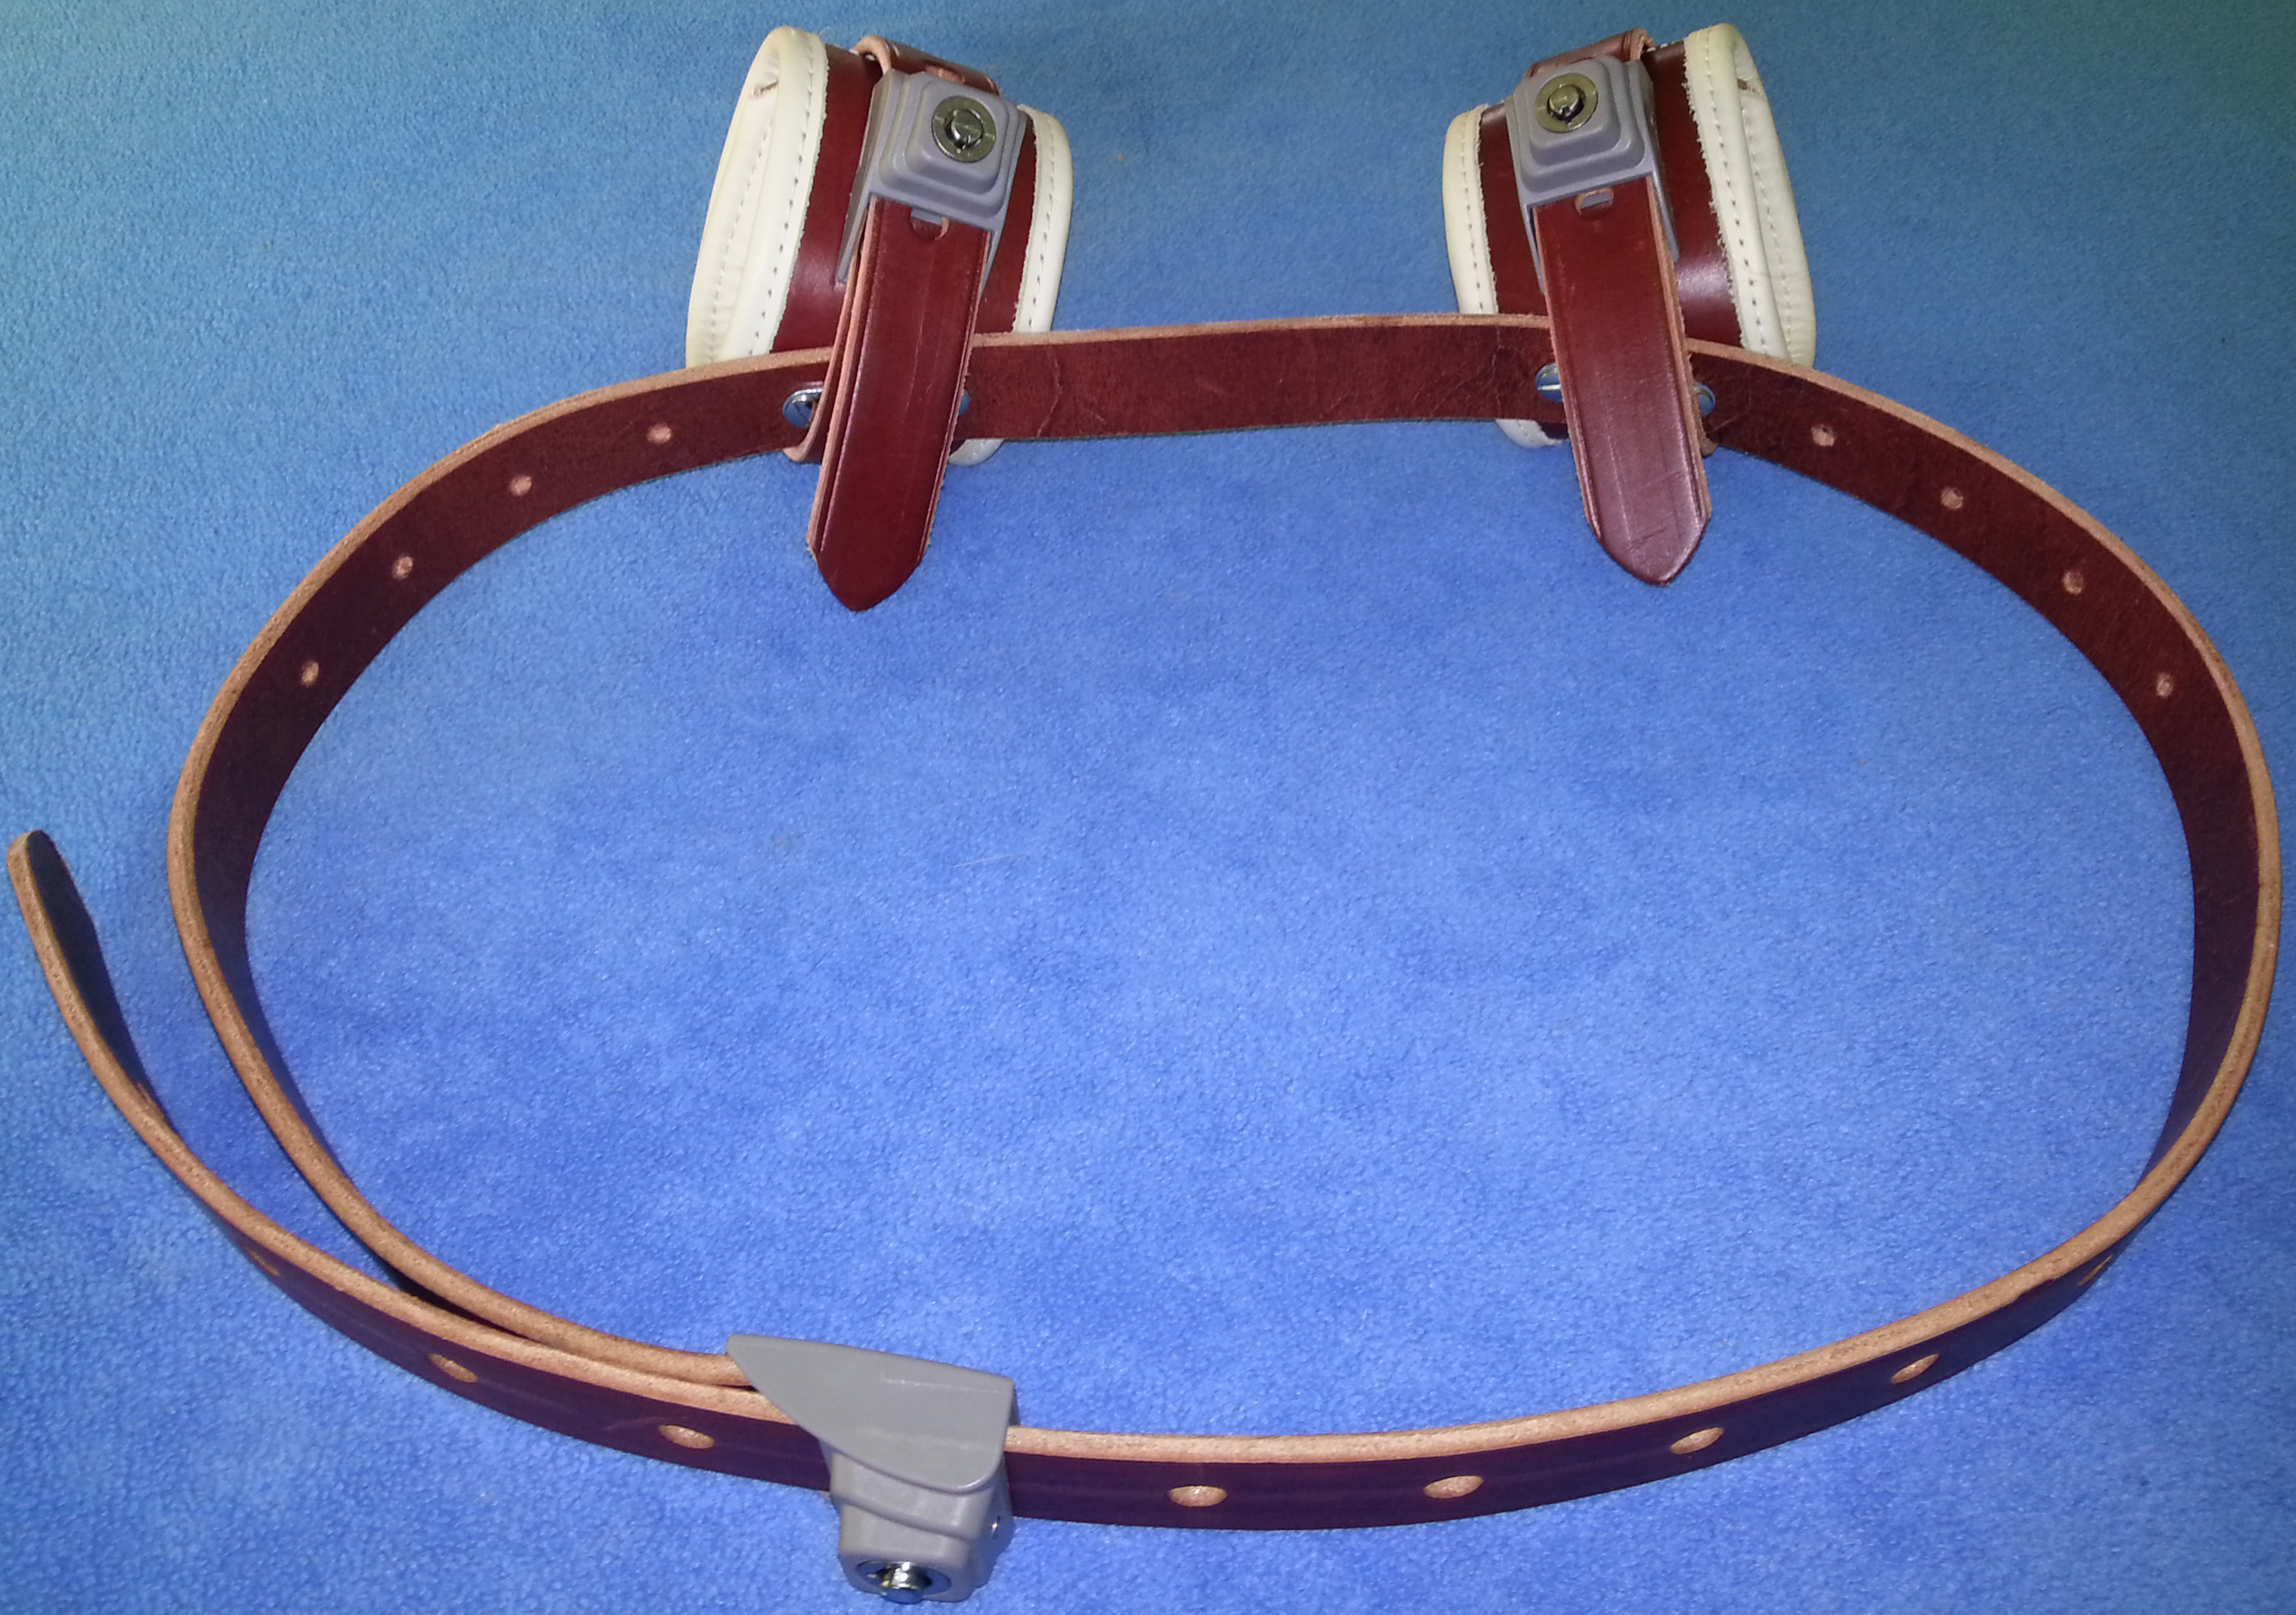 Humane Restraint abschliessbares Lederhalsband 33-44 cm